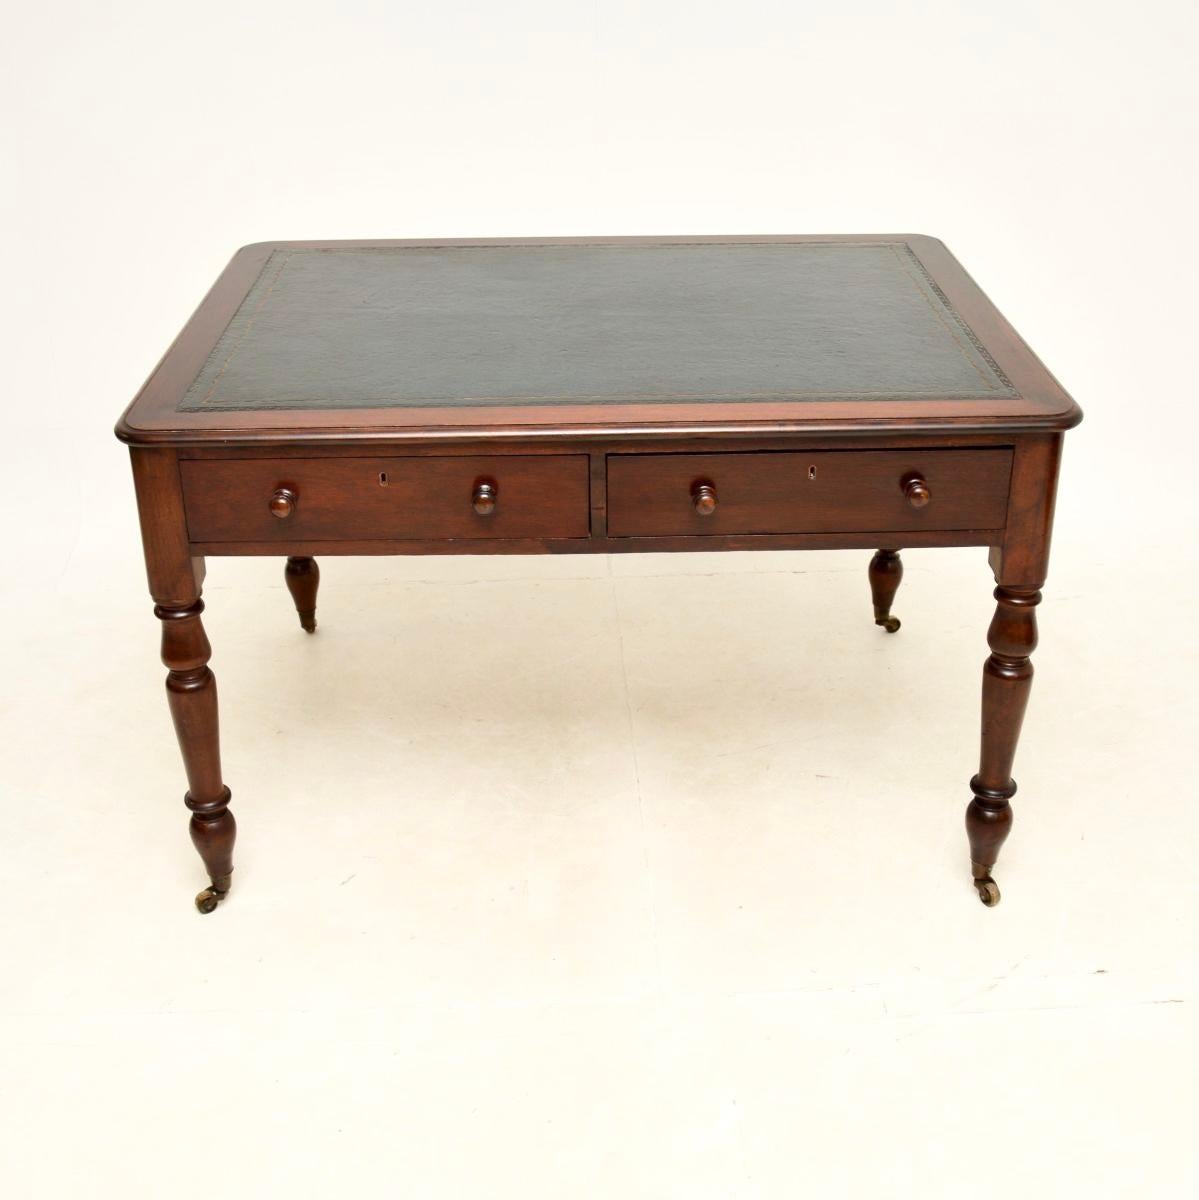 Eine hervorragende antike viktorianische Lederplatte Partner Schreibtisch / Schreibtisch. Sie wurde in England hergestellt und stammt aus der Zeit zwischen 1860 und 1880.

Er ist von hervorragender Qualität und hat eine beeindruckende Größe mit viel